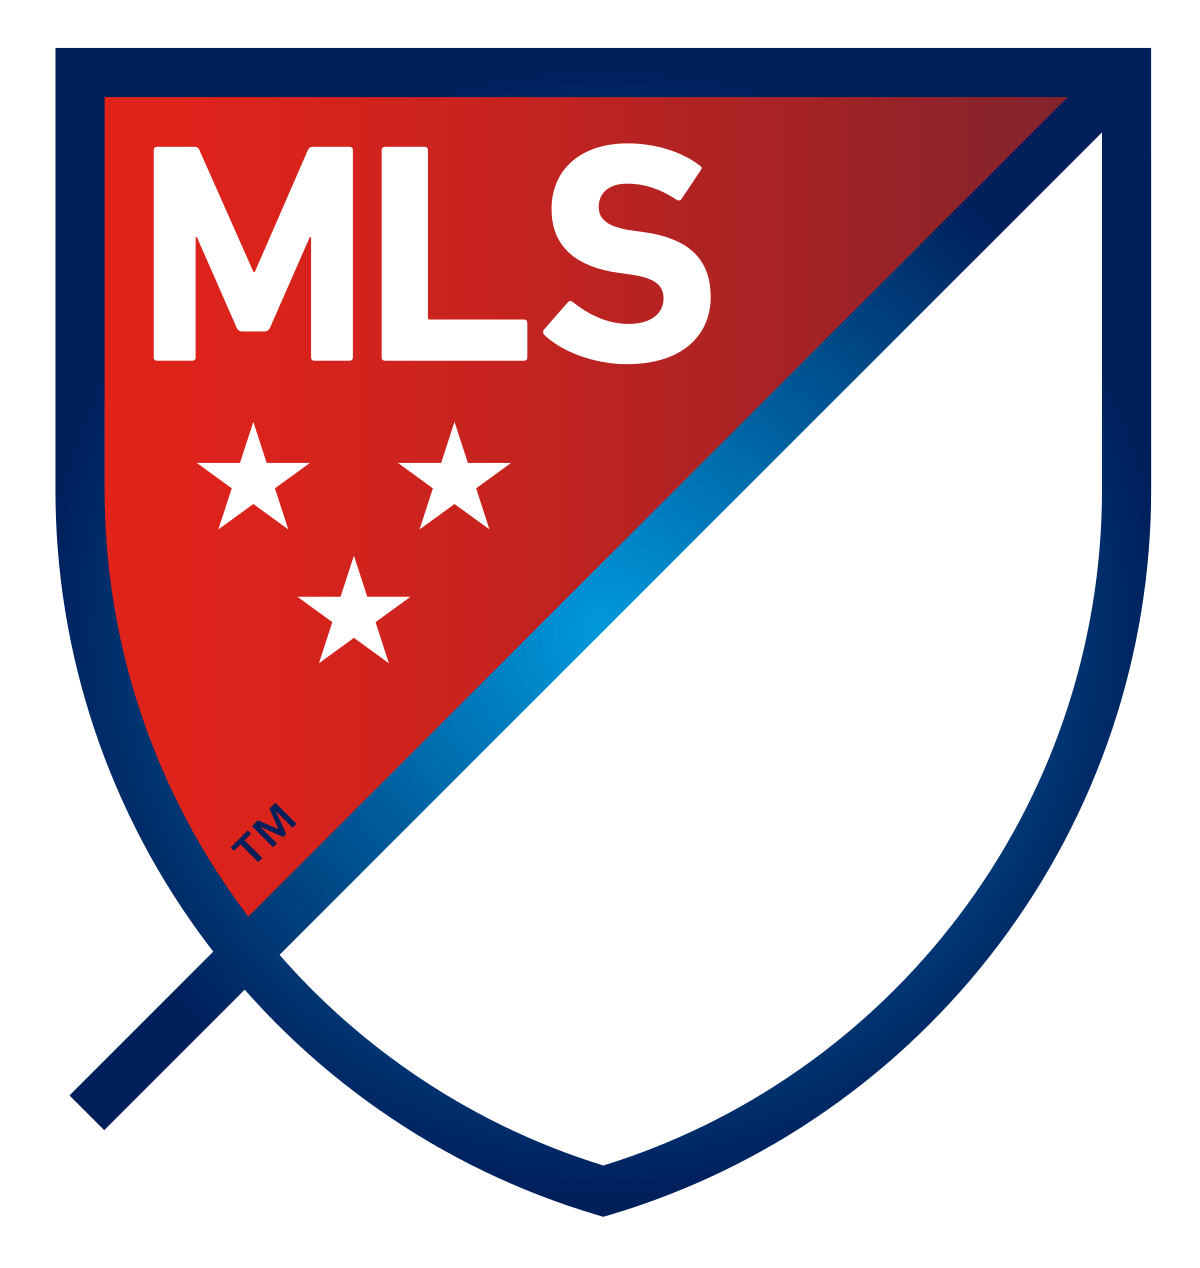 Lower Case B Sports Logo - Major League Soccer